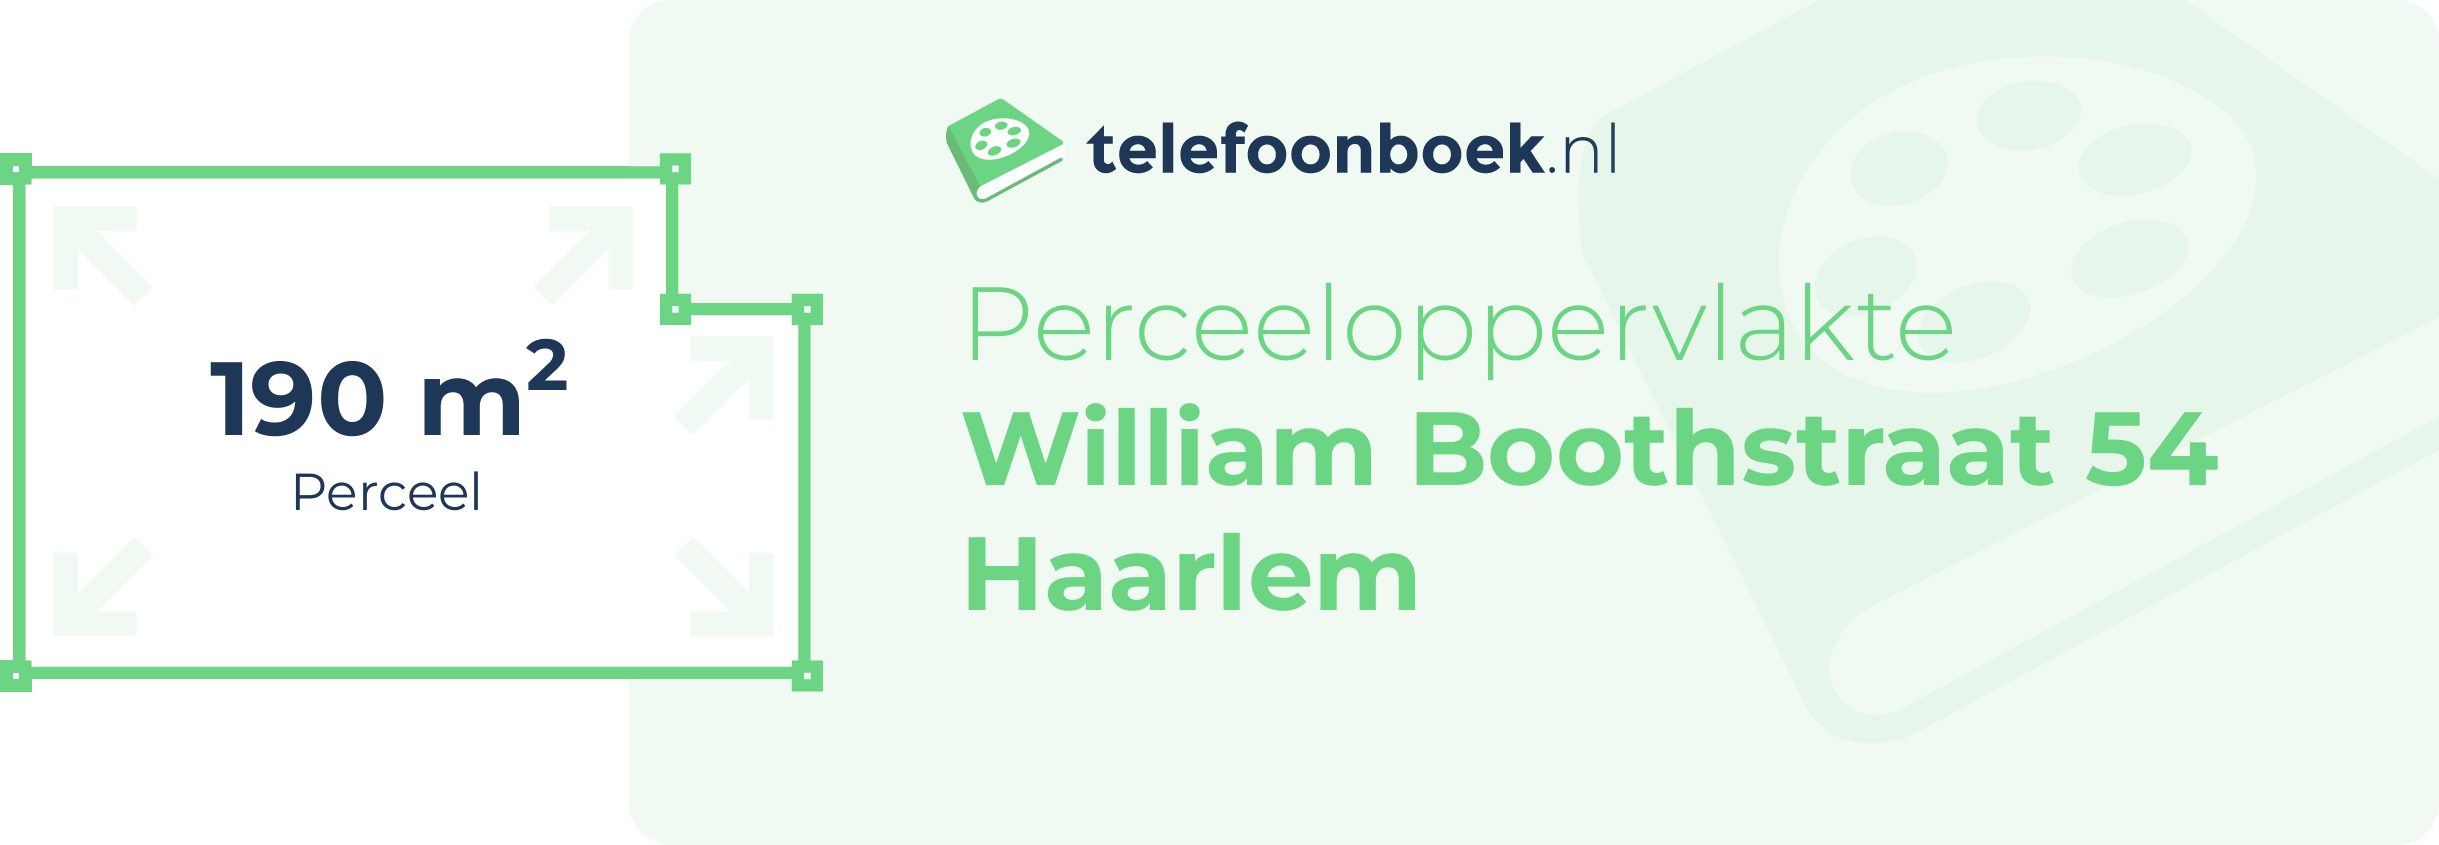 Perceeloppervlakte William Boothstraat 54 Haarlem